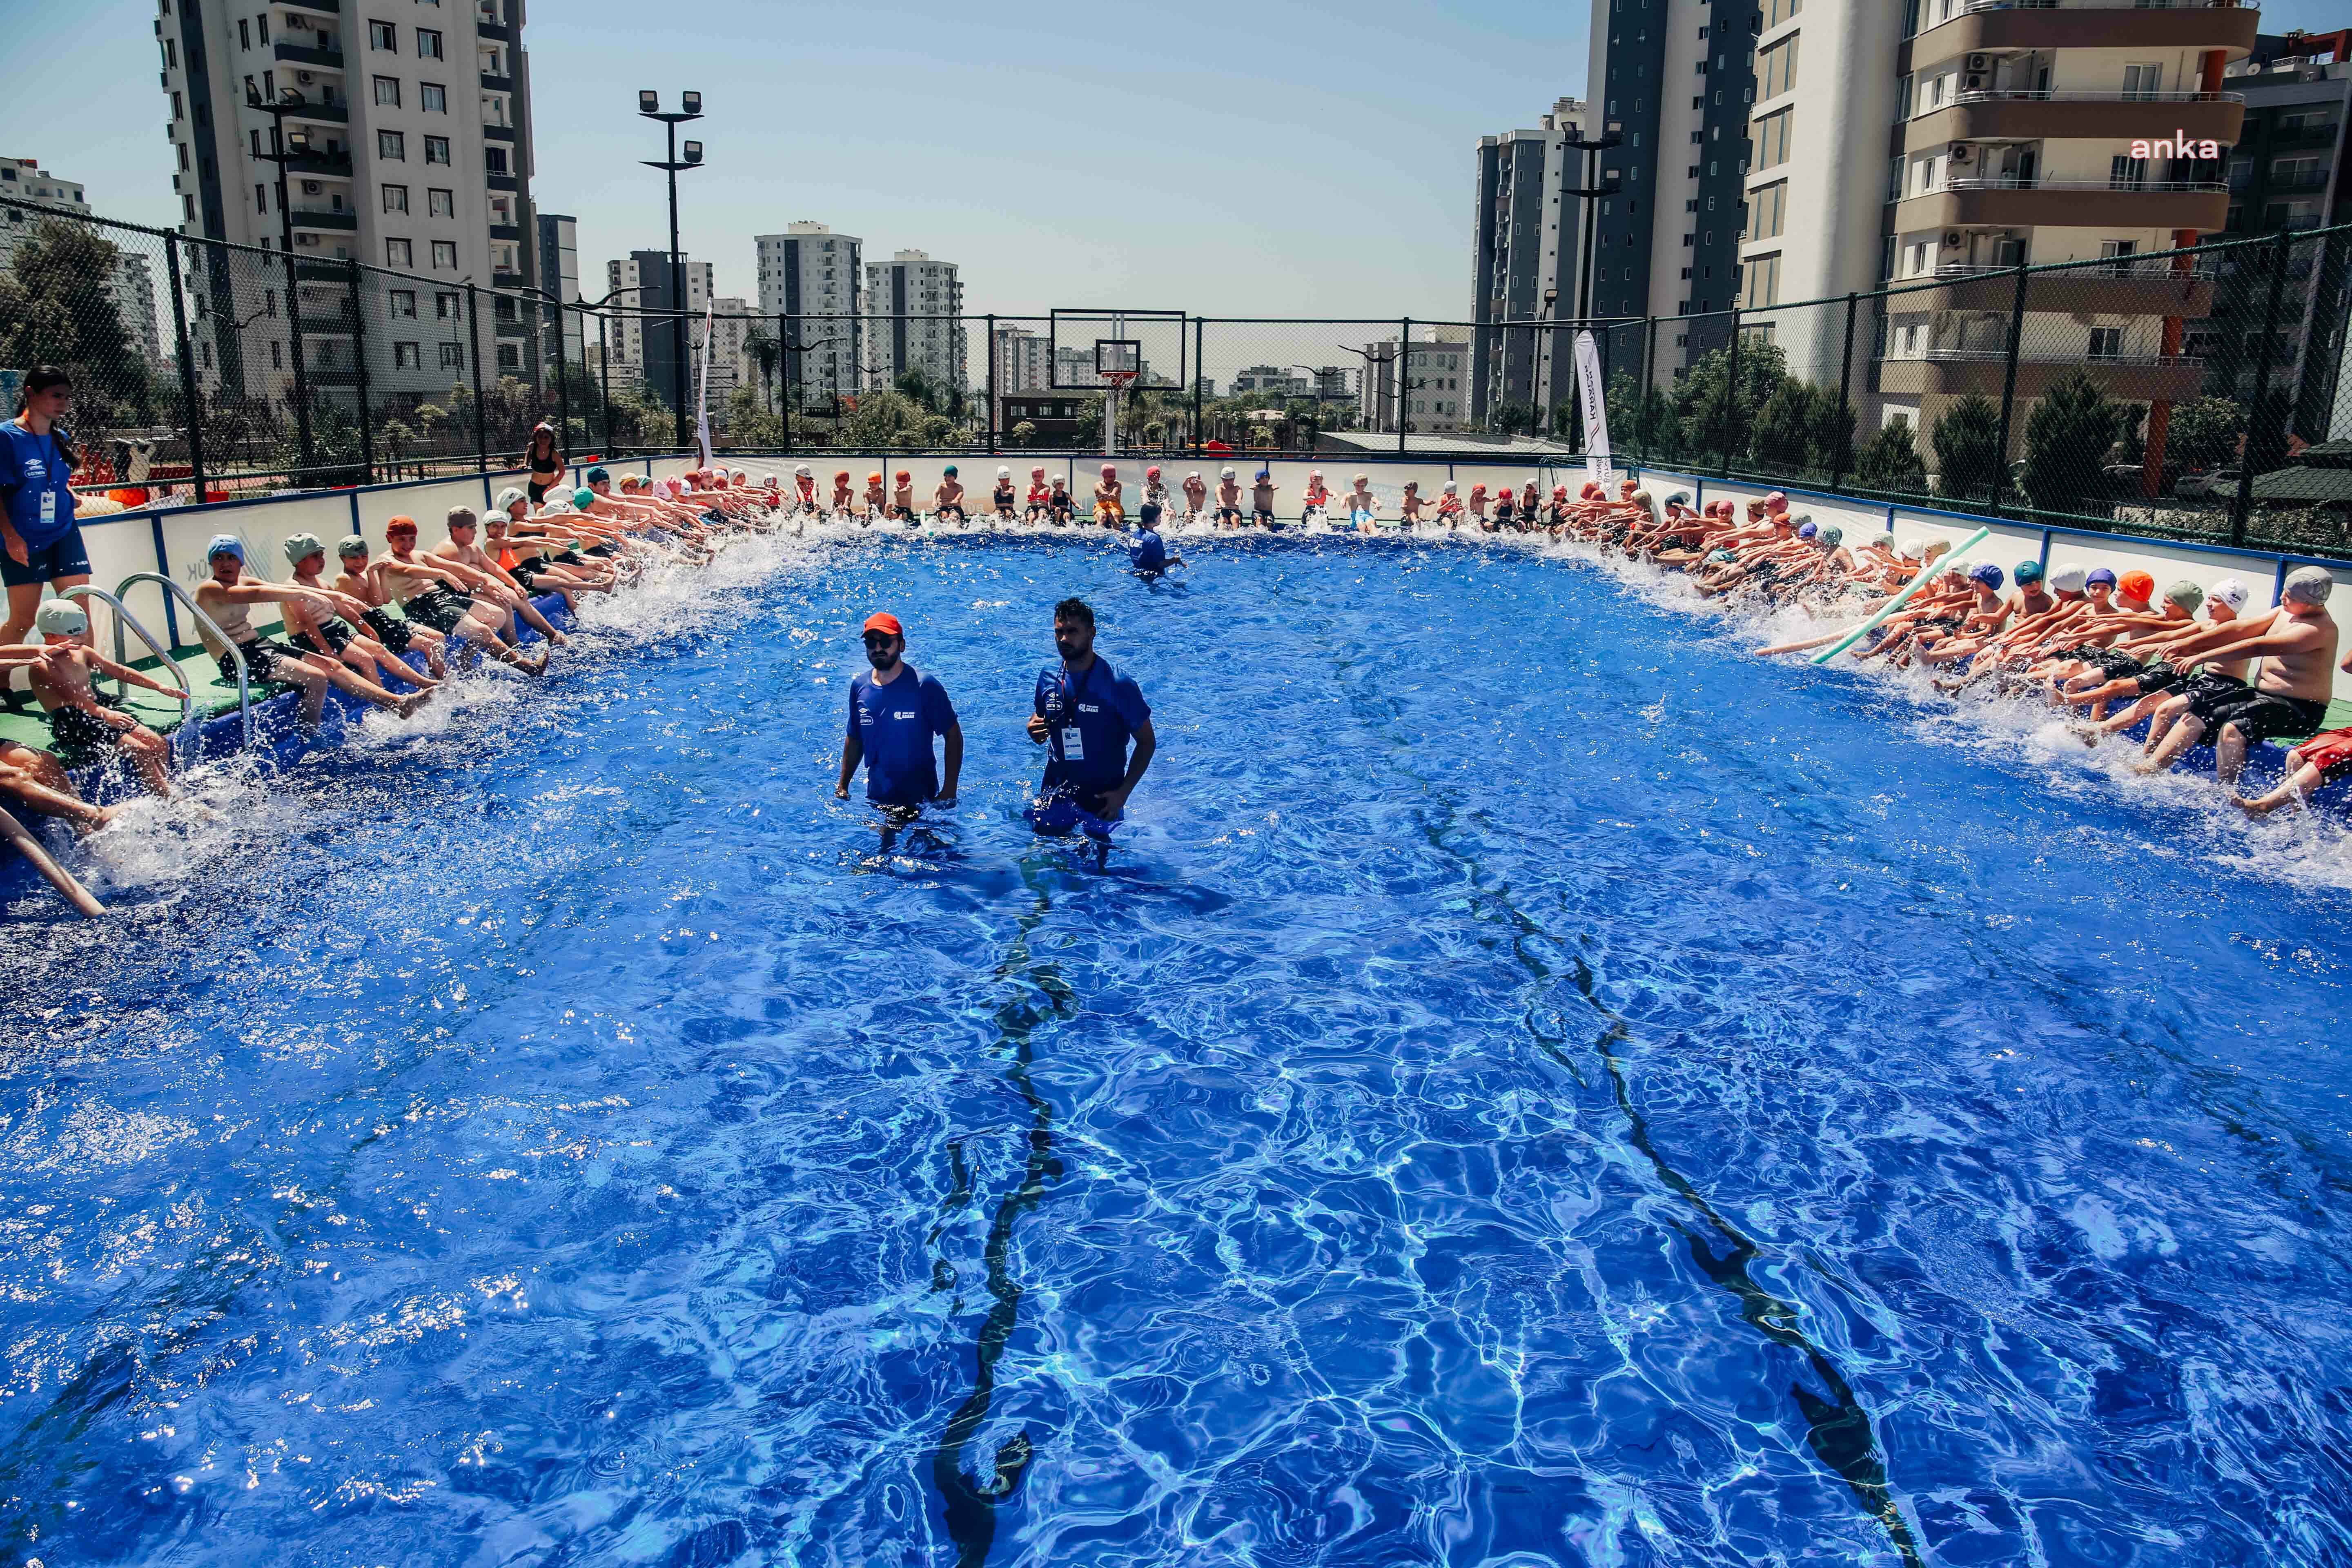 Adana Büyükşehir Belediyesi'nin Sarıçam'da kurduğu portatif havuz yurttaşların kullanımına açıldı